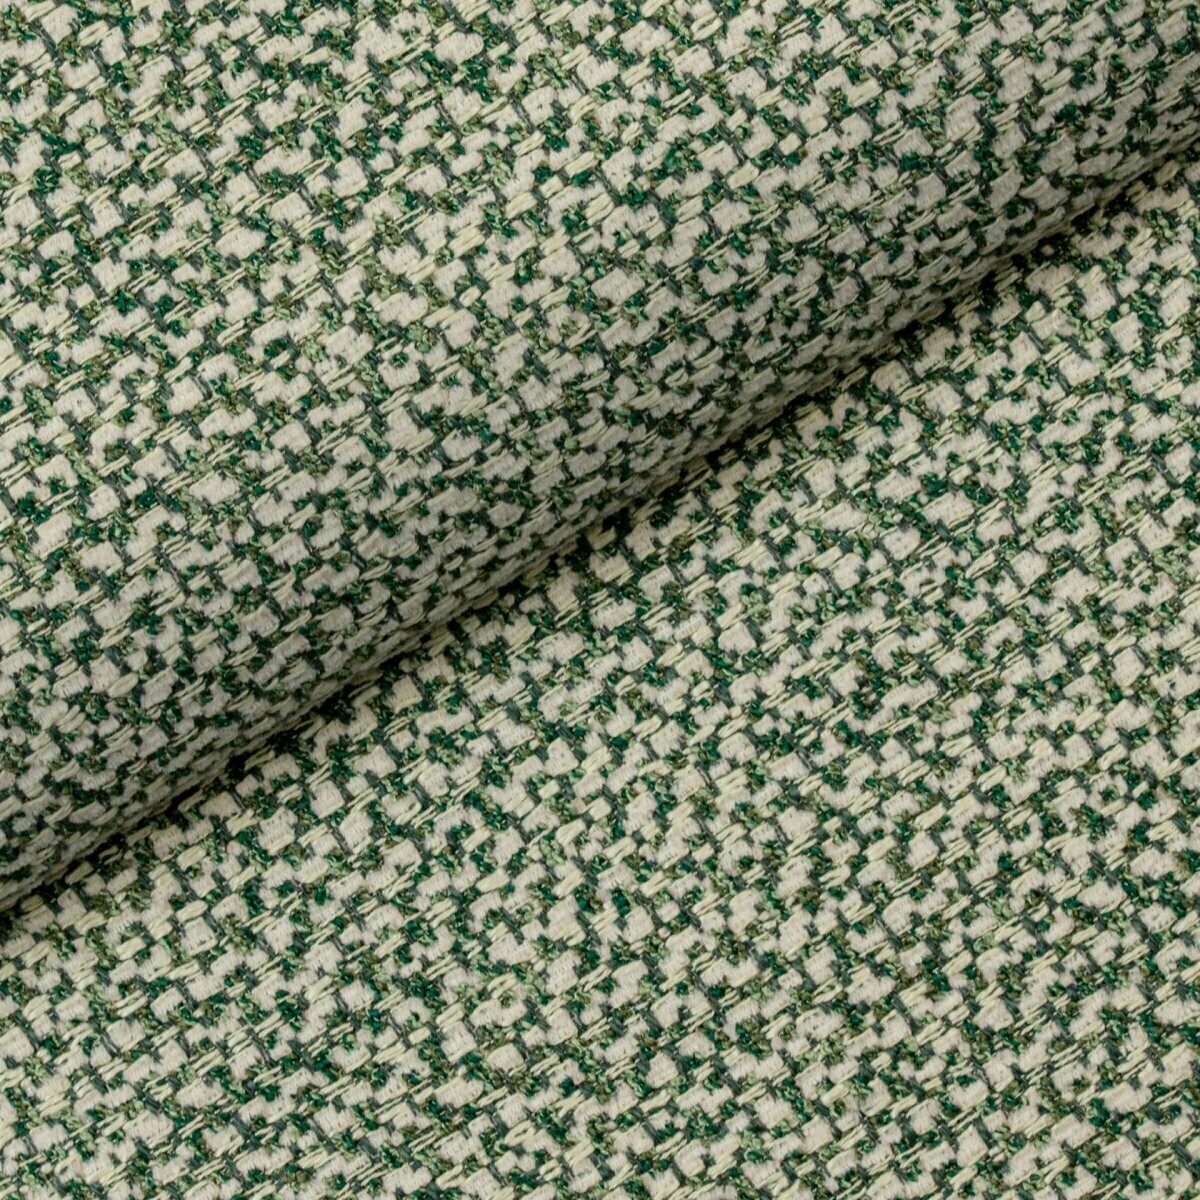 Łatwa w utrzymaniu tkanina Nebbia 11 Fargotex w kolorze morskim z elementami zieleni i beżu. 